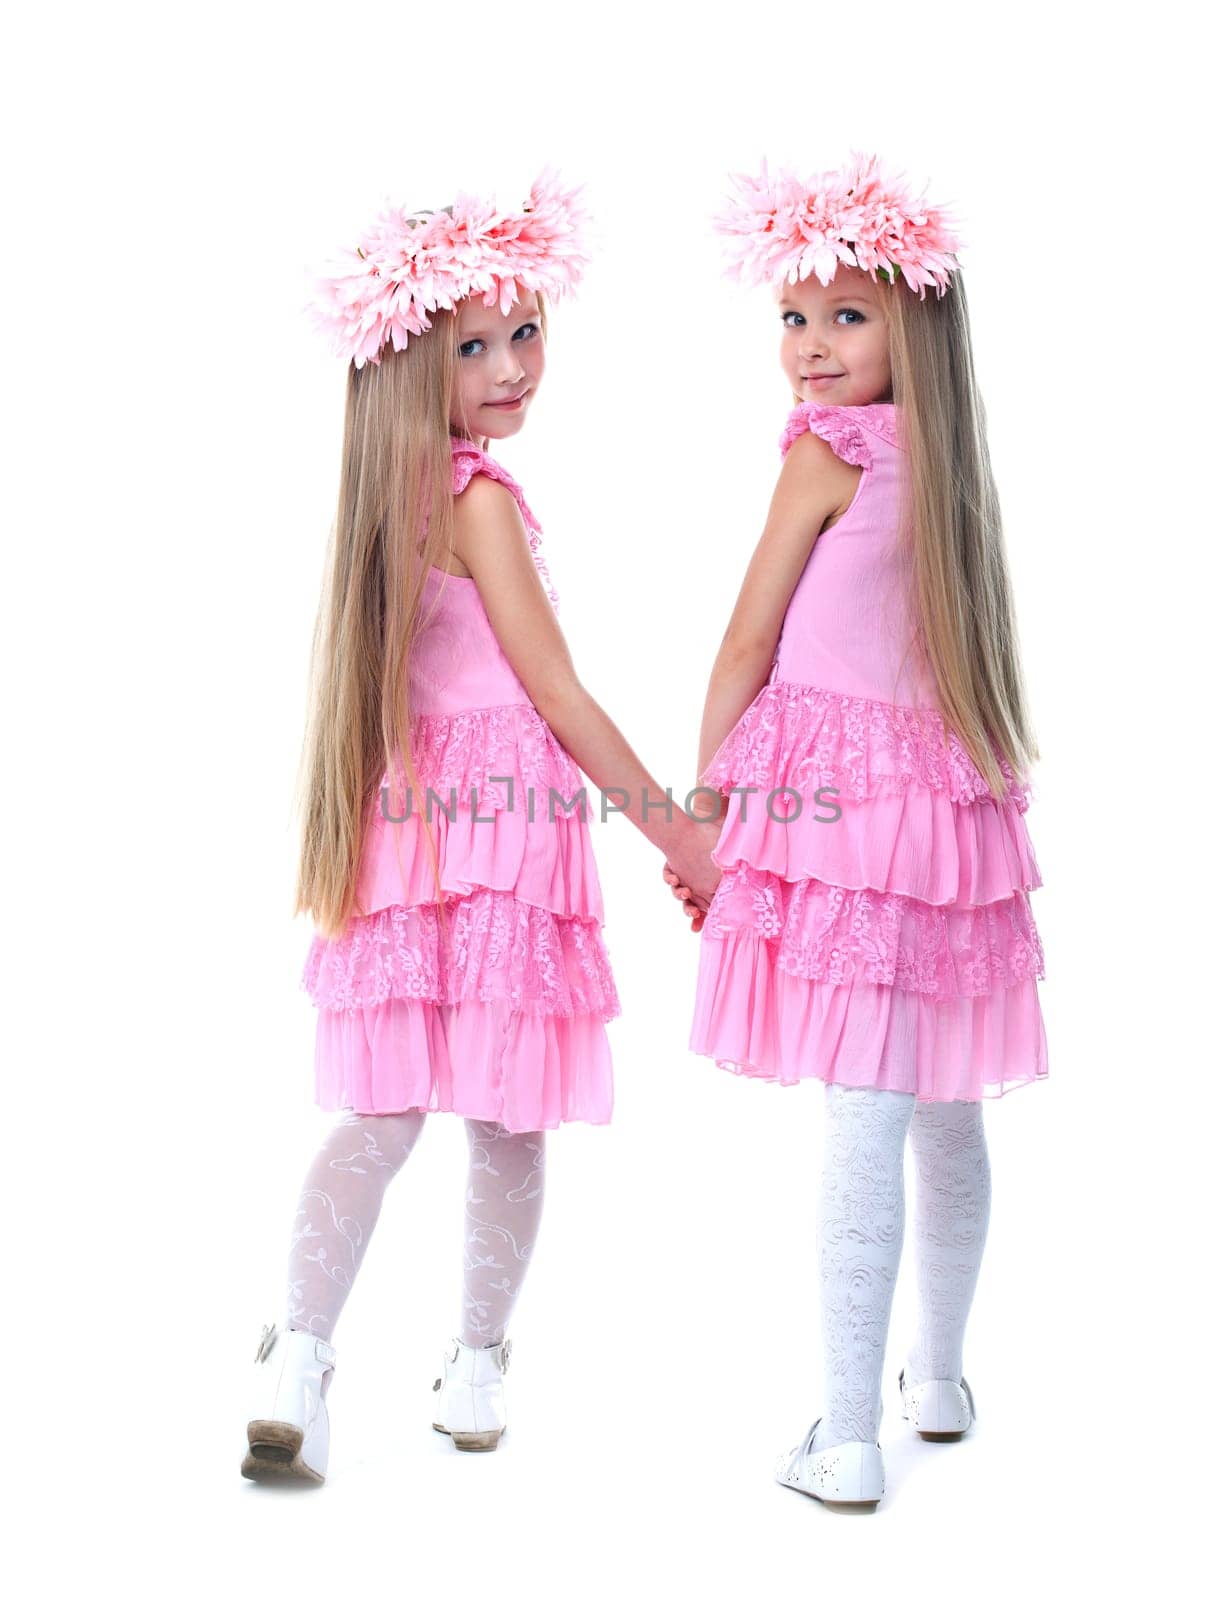 Full length portrait of little girls in pink dresses. Isolated on white